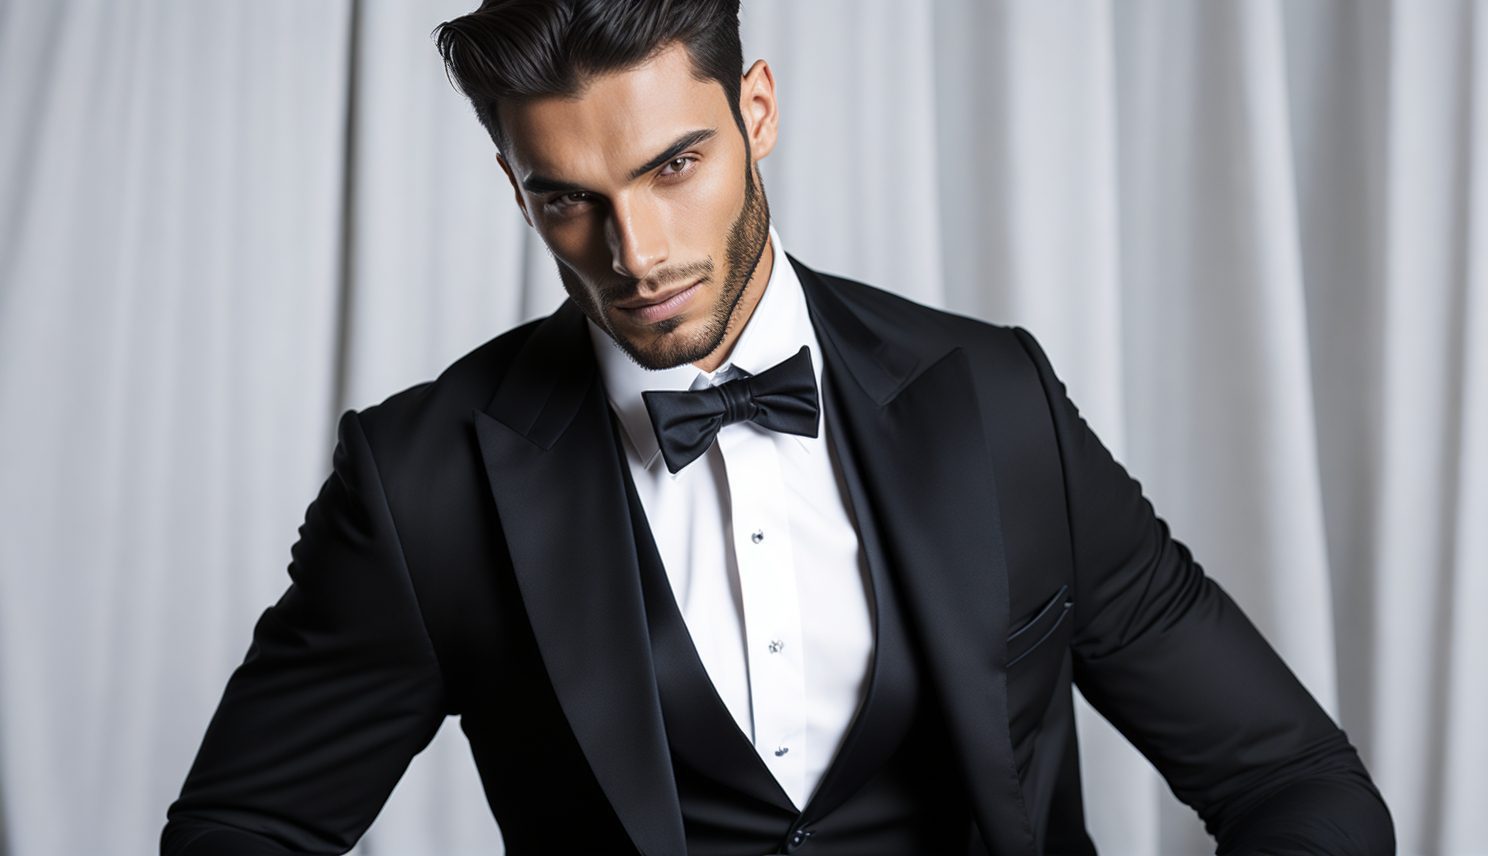 Men's Dress Shirts for Black-Tie Events - Formal Gentlemen